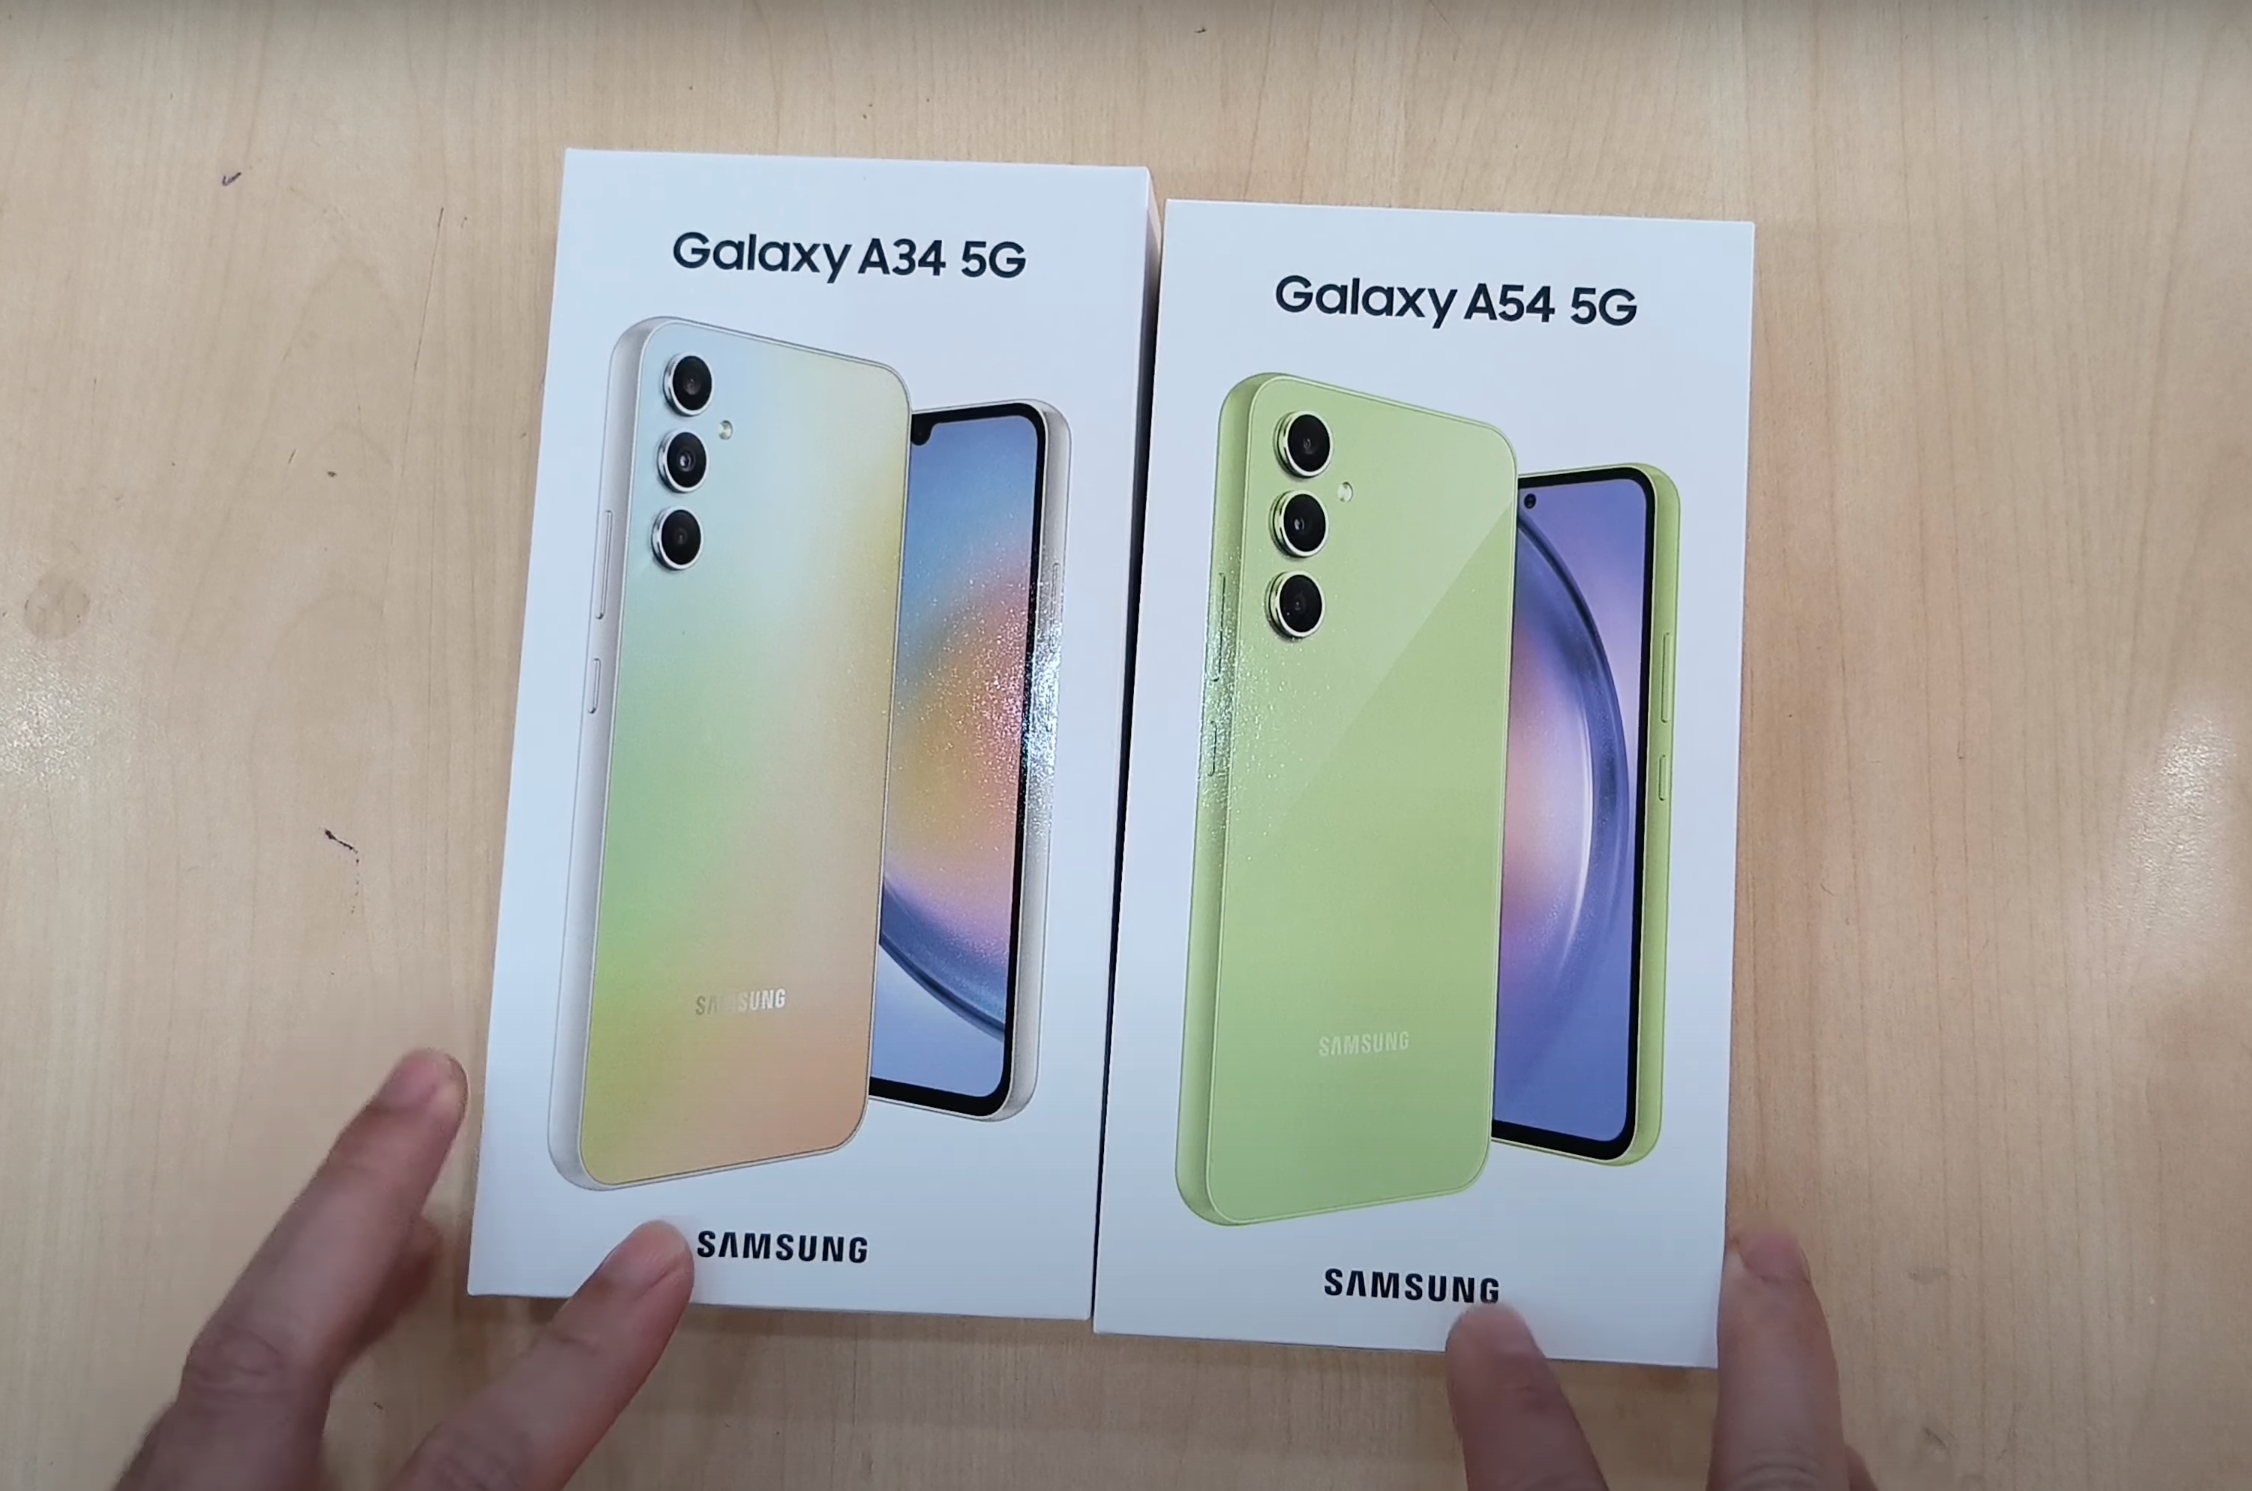 Trzy dni przed odsłonięciem: w sieci pojawiło się wideo z unboxingu Galaxy A34 i Galaxy A54